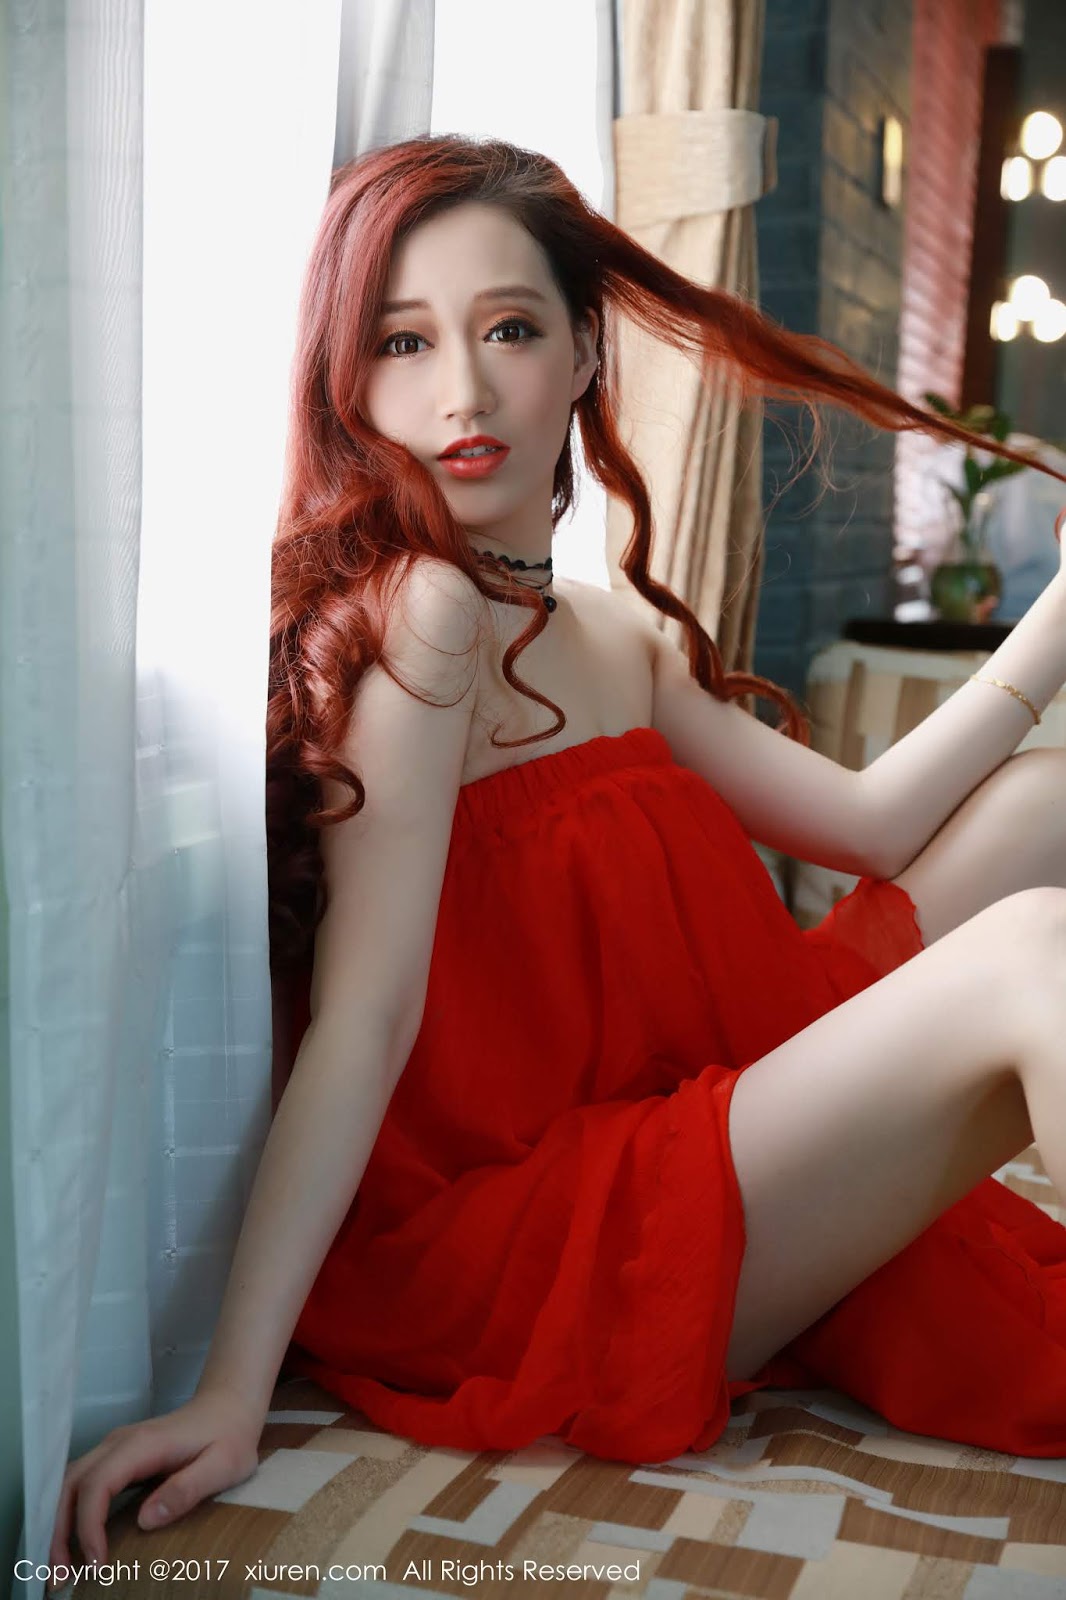 女神 葉夢軒 性感鮮紅睡衣露出大白美腿 - 貼圖 - 清涼寫真 -